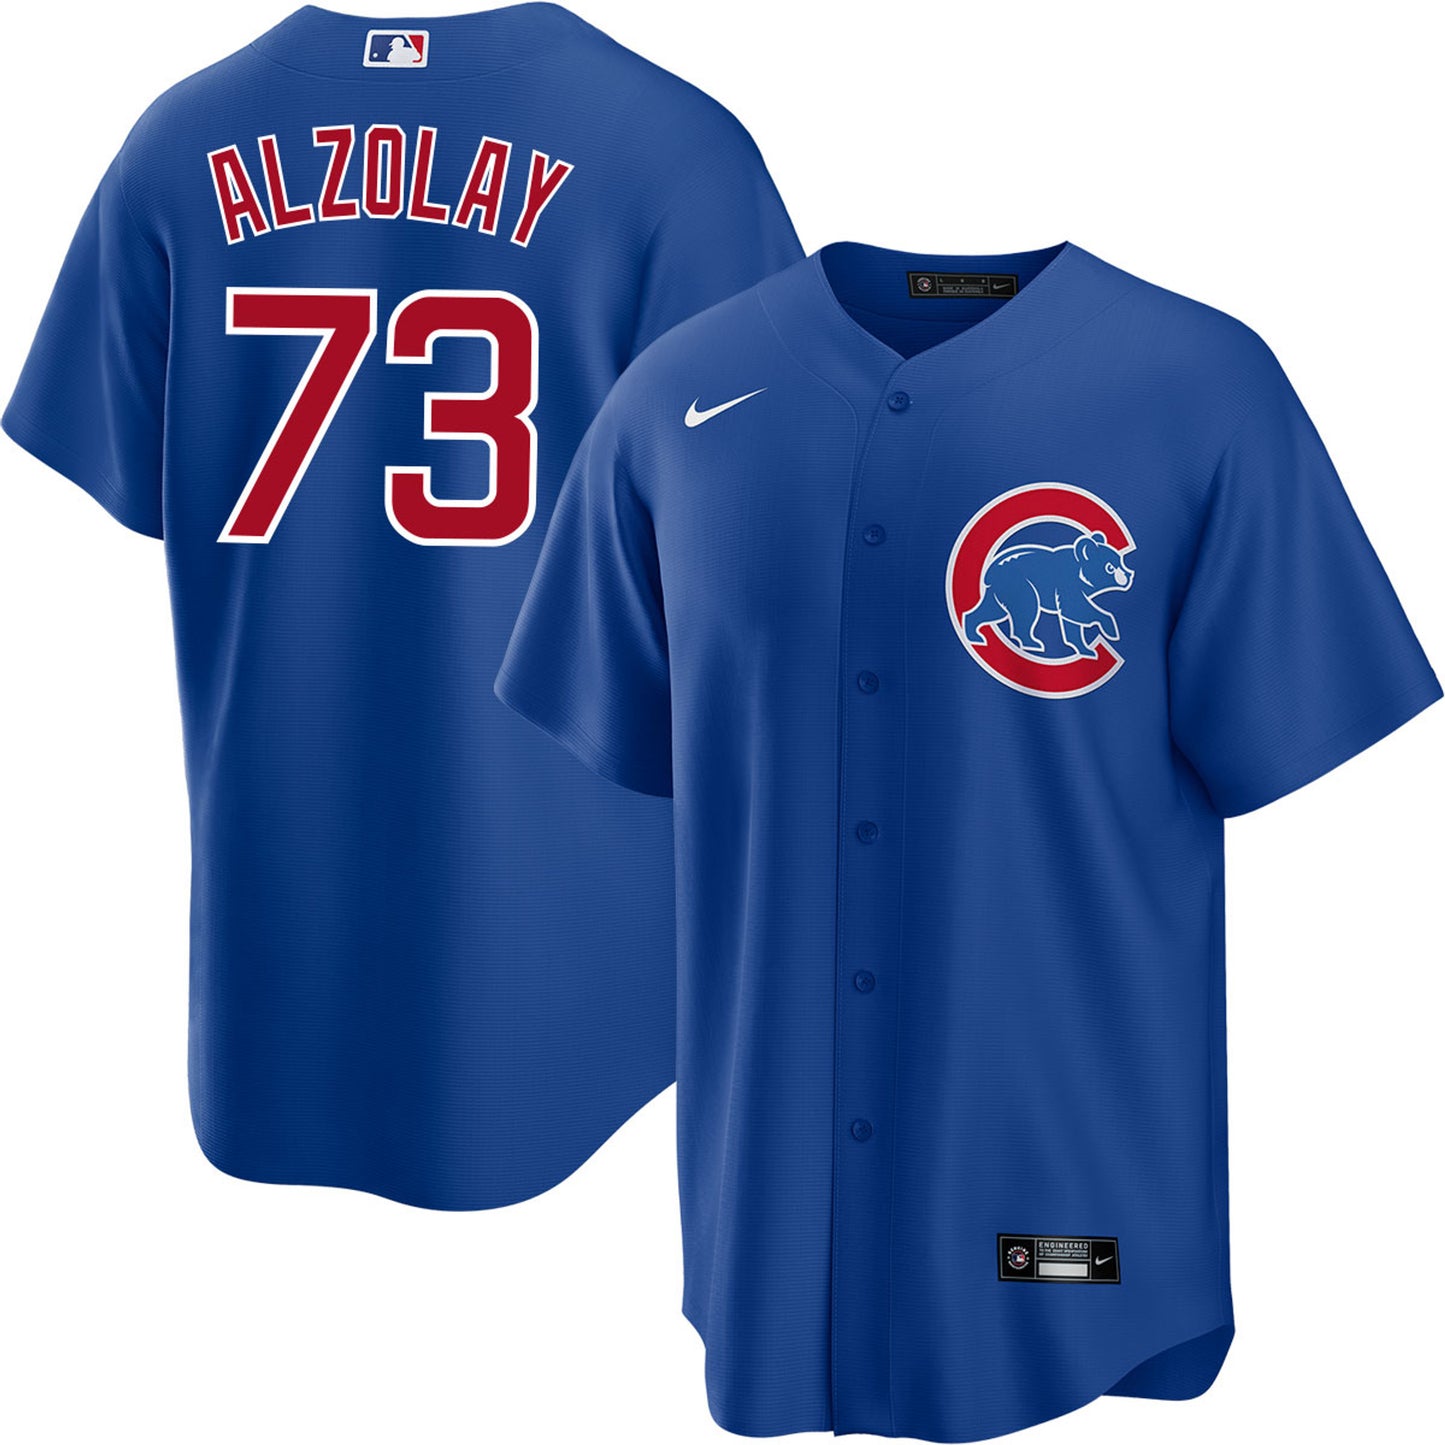 Men's Adbert Alzolay Chicago Cubs Player Jersey